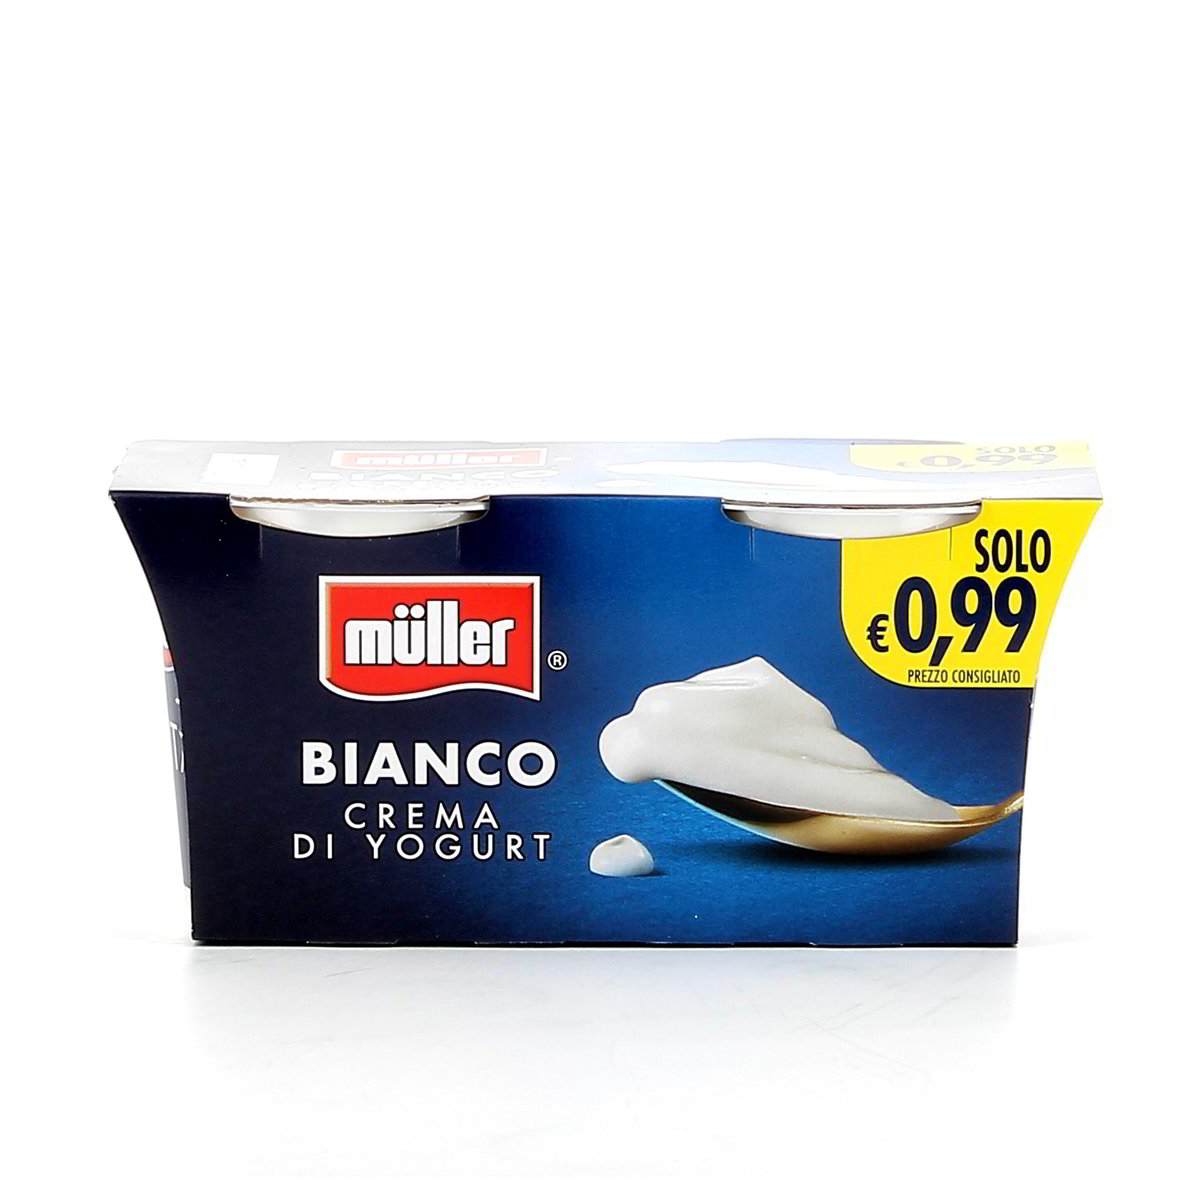 BIANCO CREMA DI YOGURT MÜLLER 2x125 g in dettaglio